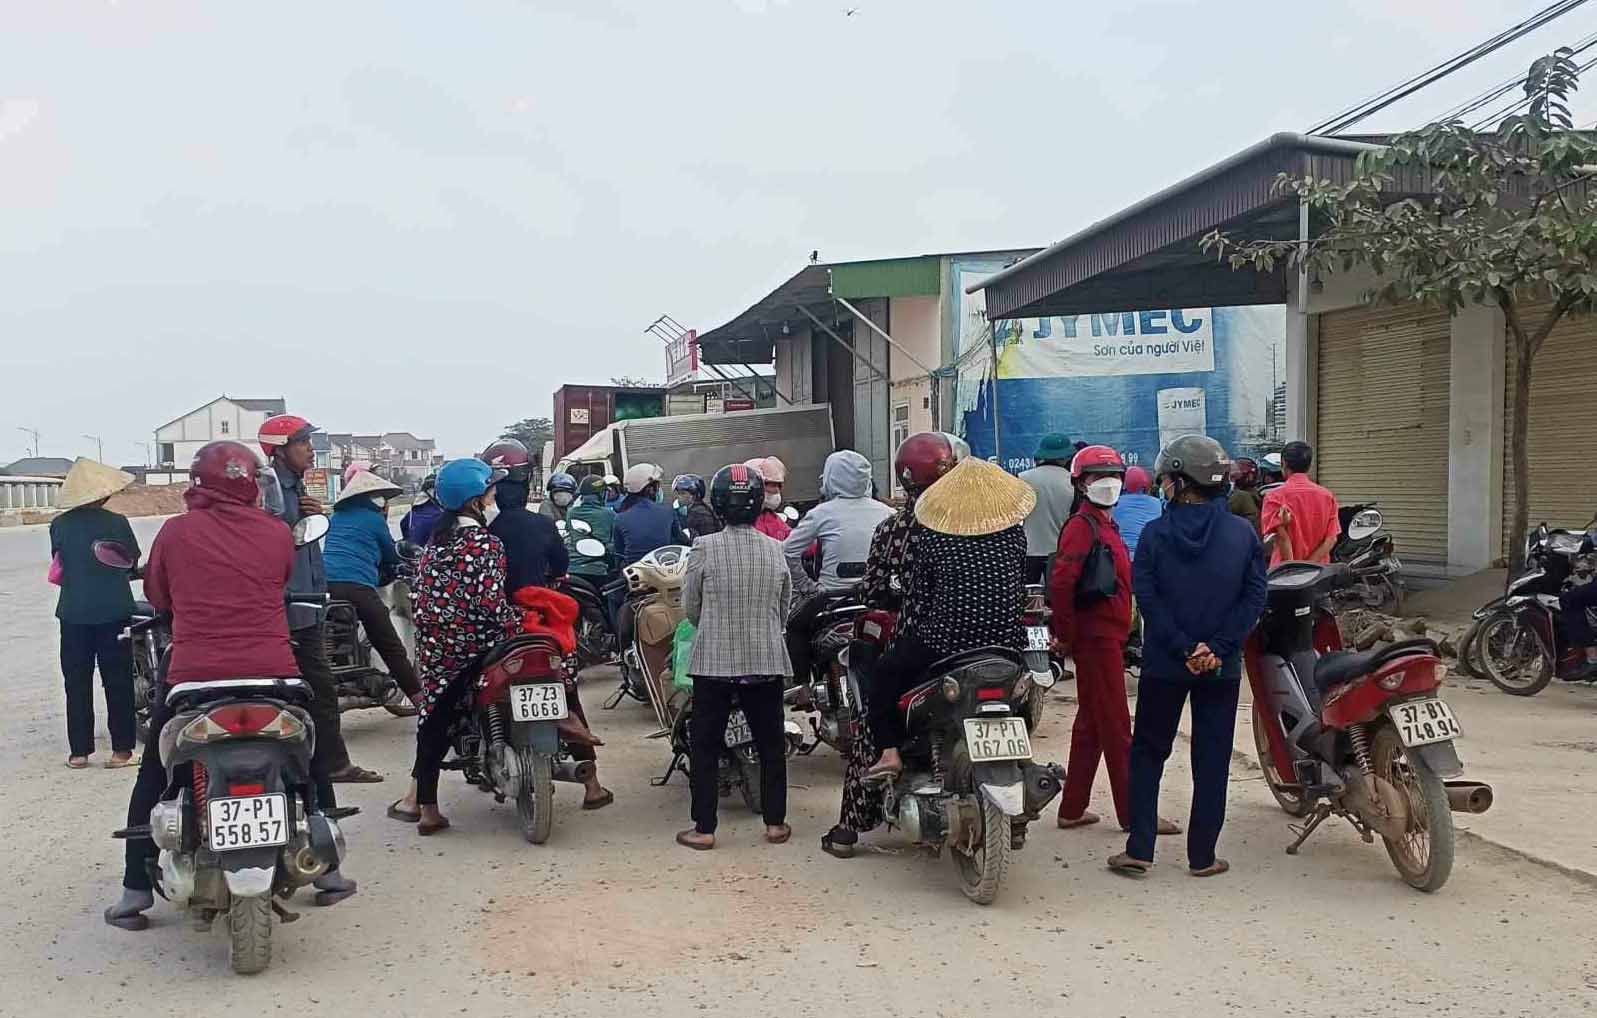 Khoảng gần 1 tháng nay, nhiều người dân liên tục kéo đến tiệm vàng Tám Nhâm đòi nợ. Ảnh: Quang Đại